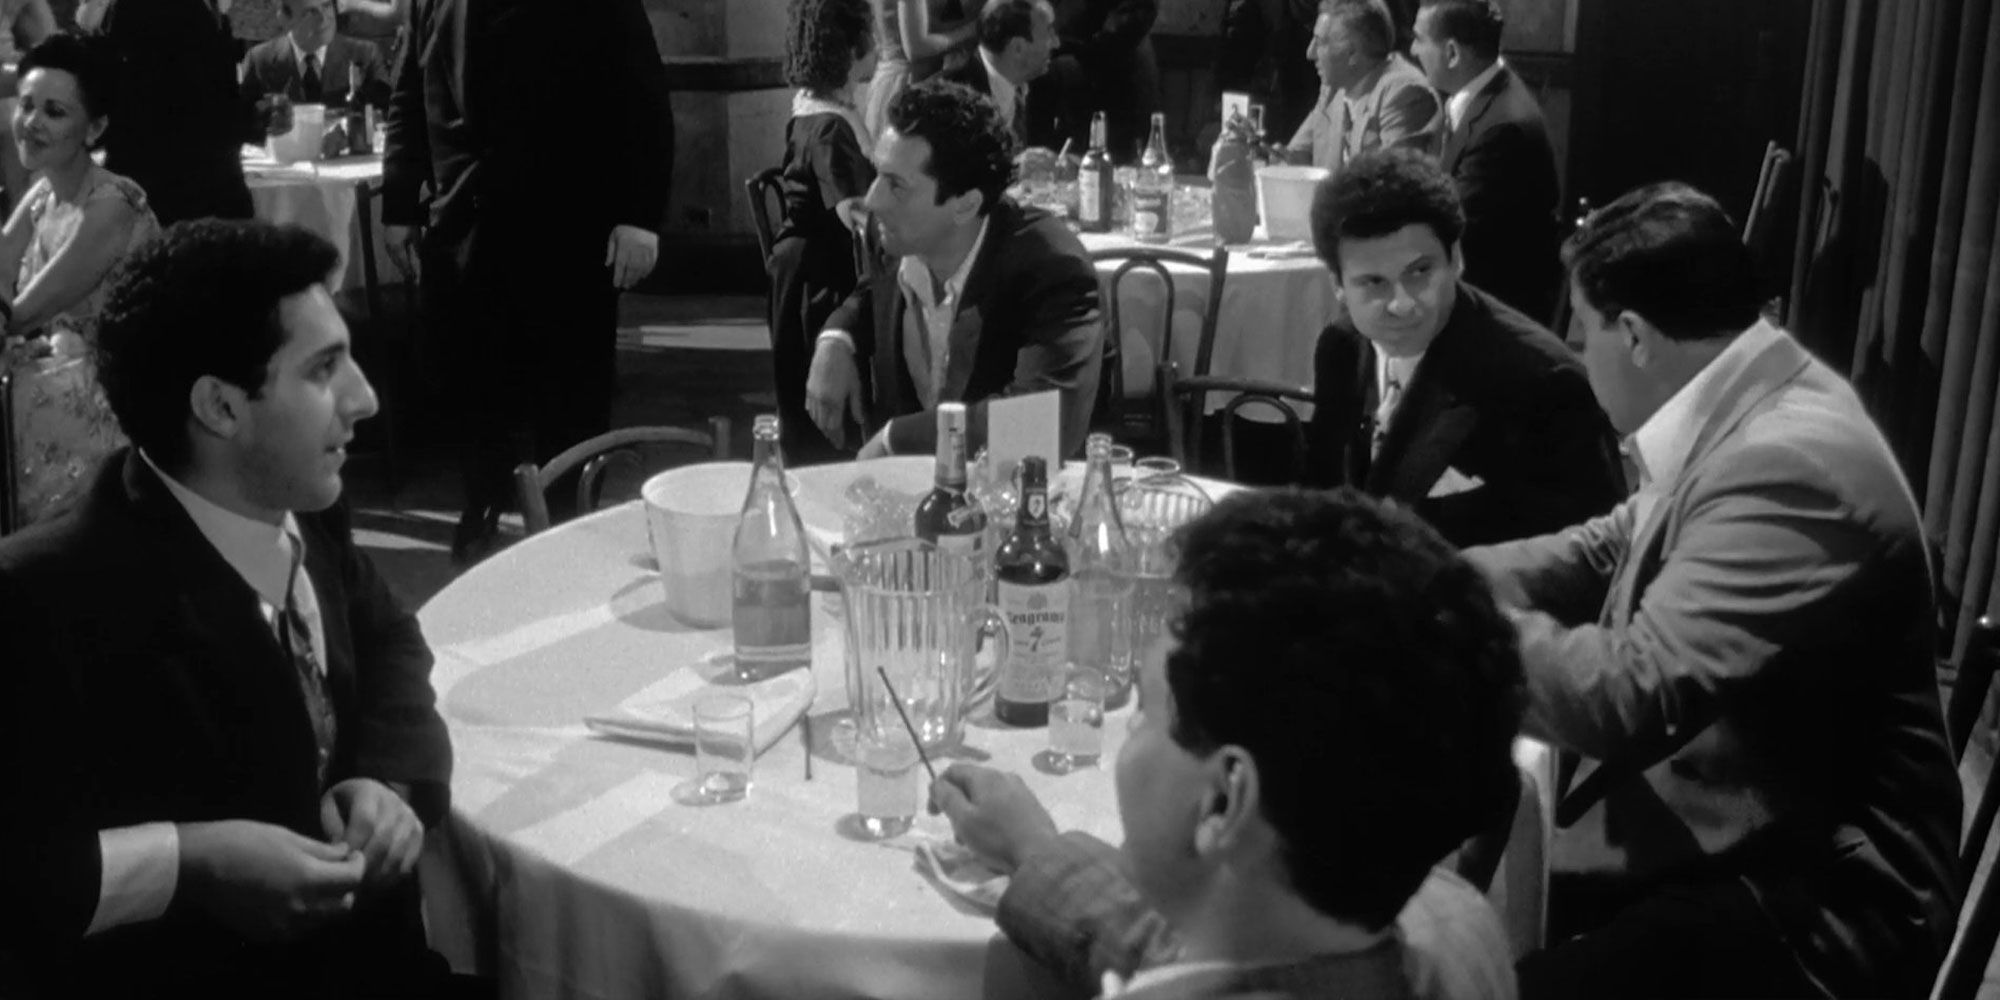 Raging Bull John Turturro, Robert De Niro, Joe Pesci sat at a table